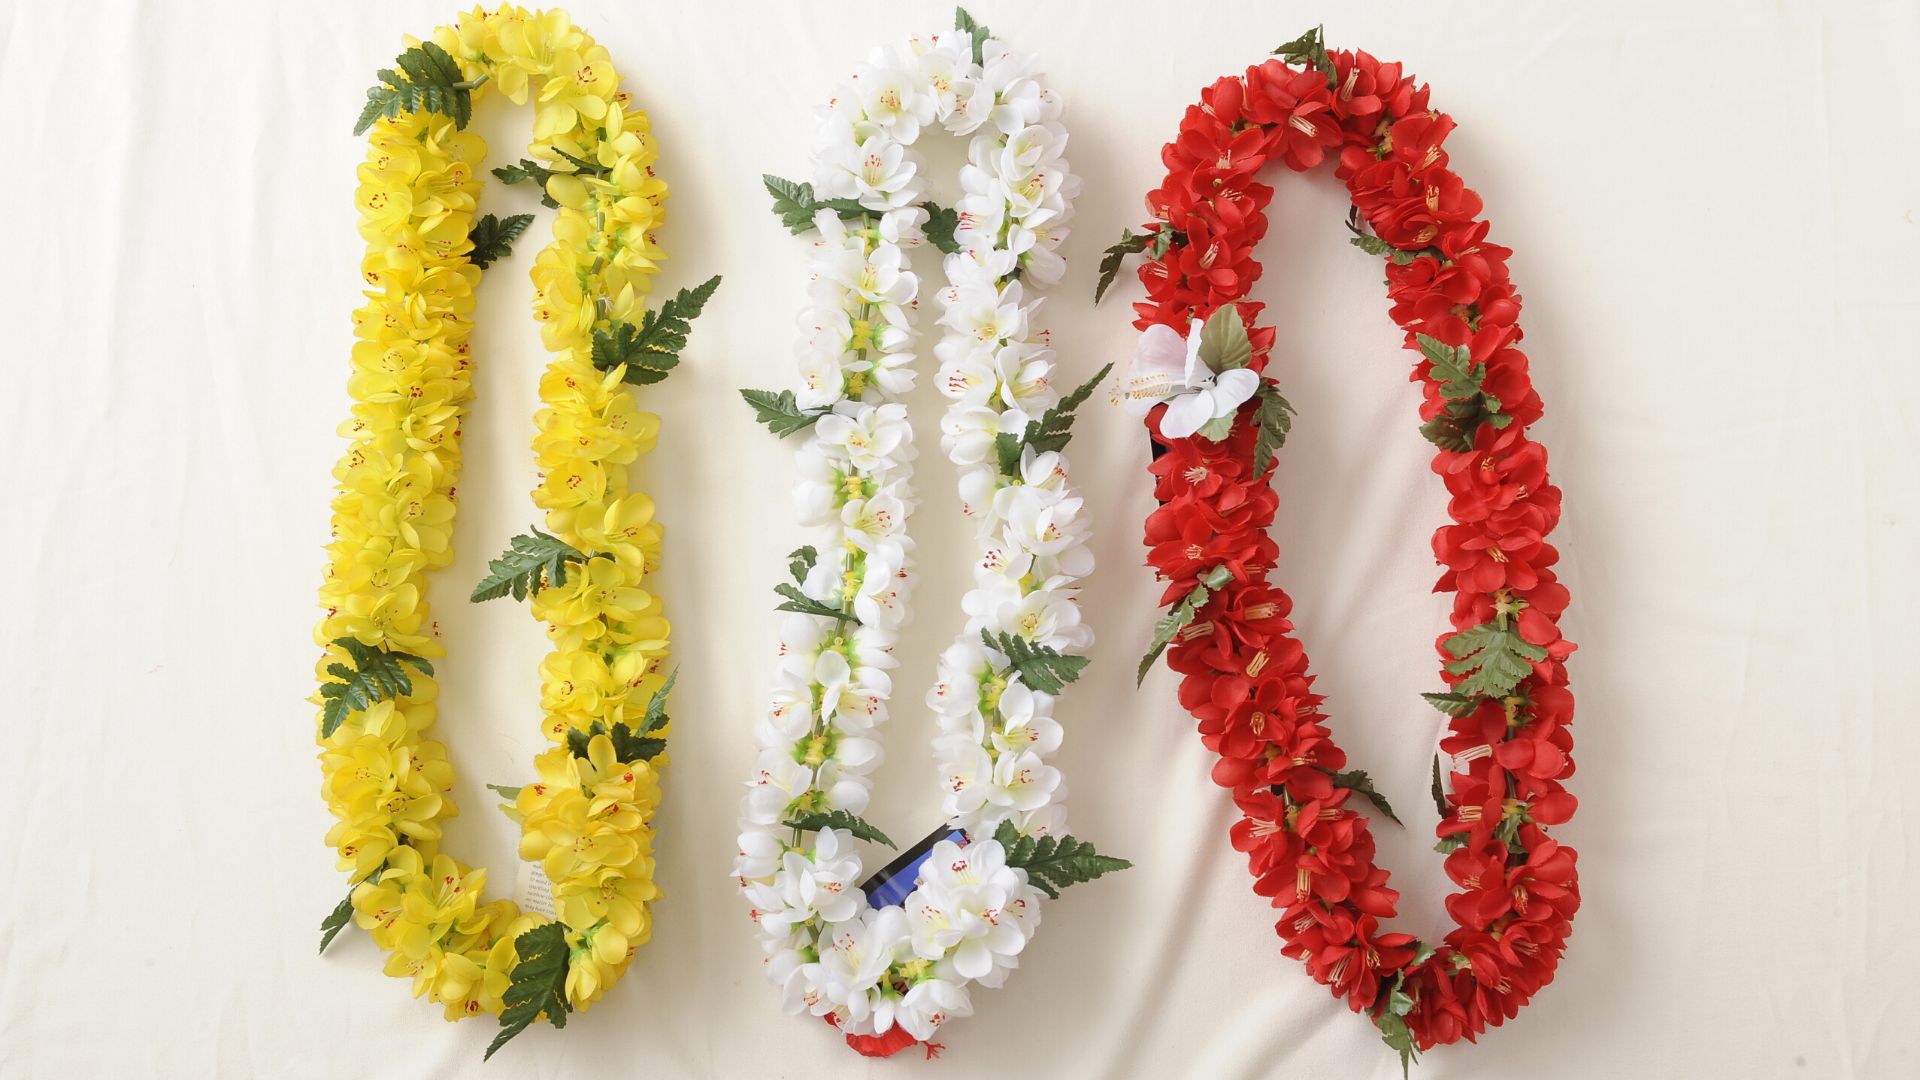 Flower Party Hawaiian Party: idee e consigli per organizzare la vostra festa